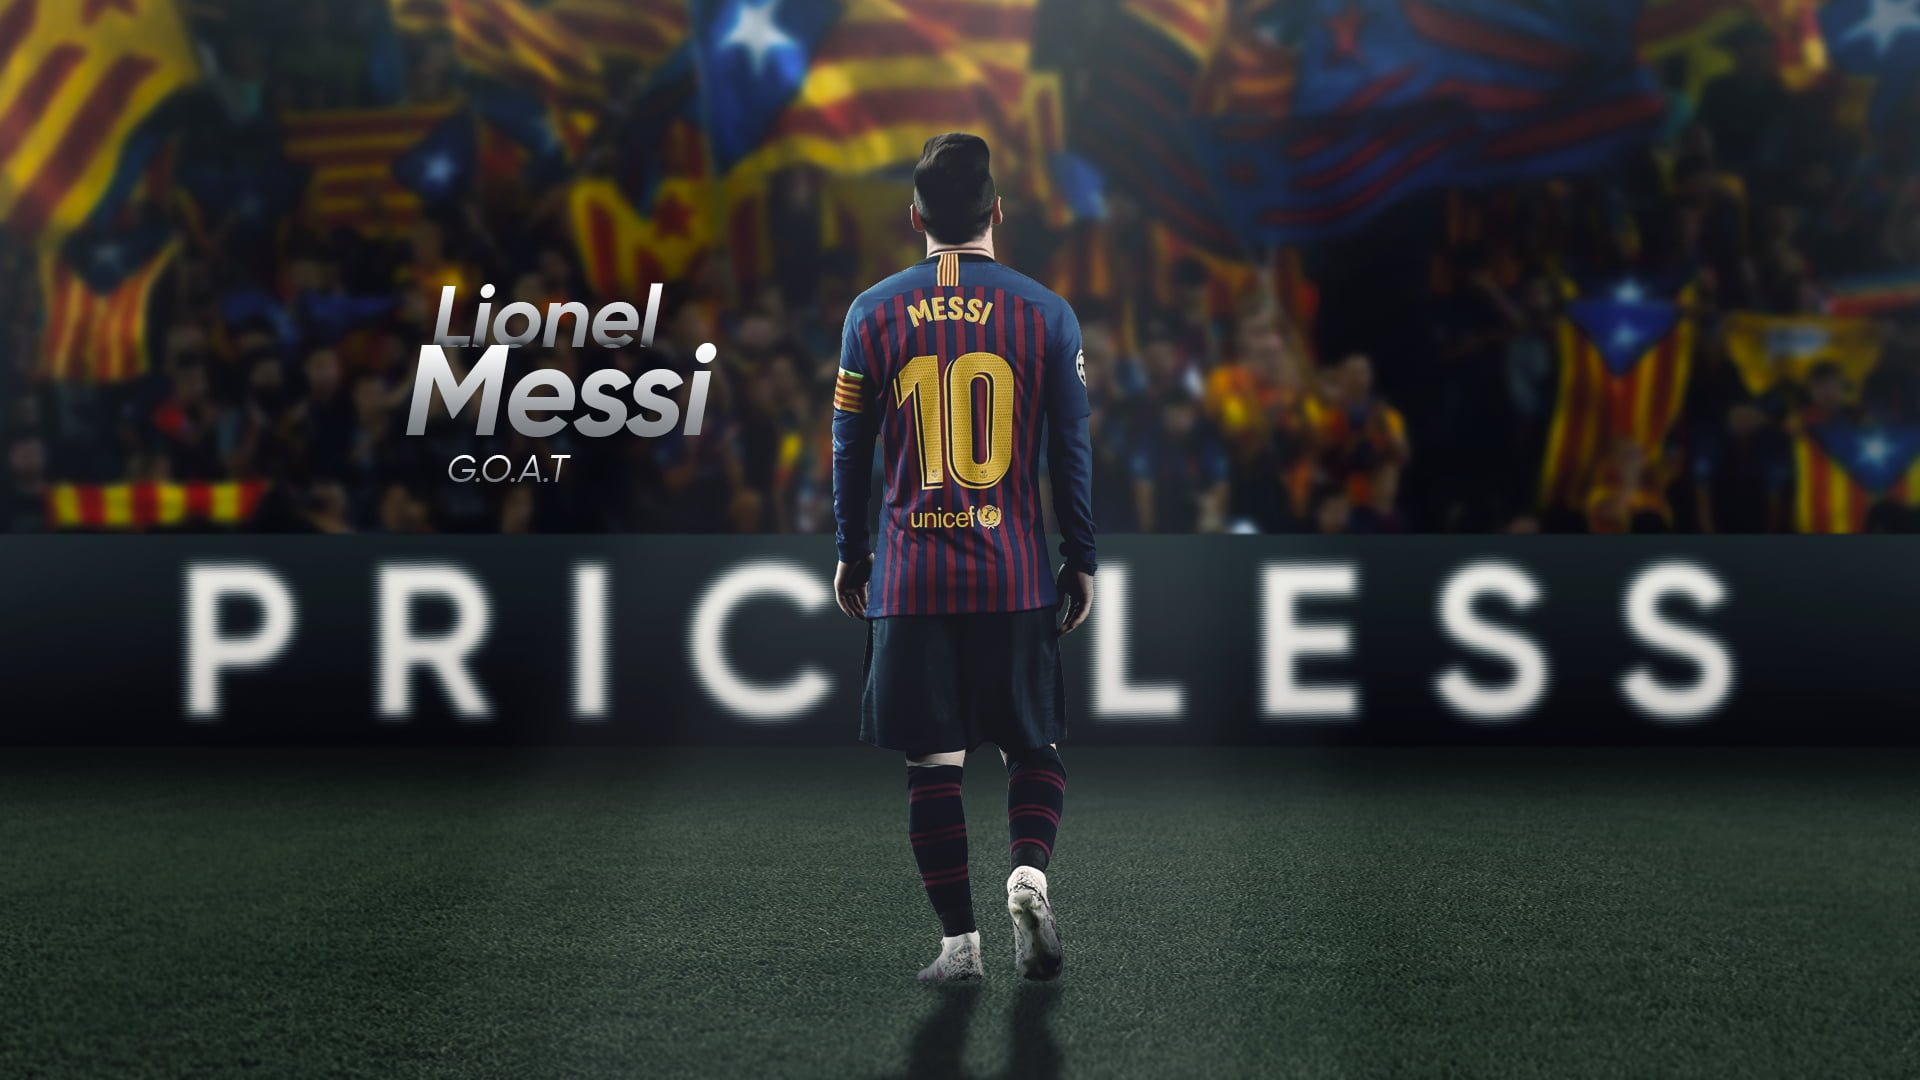 Nếu bạn là fan hâm mộ của Lionel Messi, hãy xem ngay hình nền Messi 4K đầy chất lượng trong bộ sưu tập của chúng tôi. Bạn sẽ được trải nghiệm ảnh chất lượng cao và cập nhật nhất về ngôi sao bóng đá nổi tiếng này.